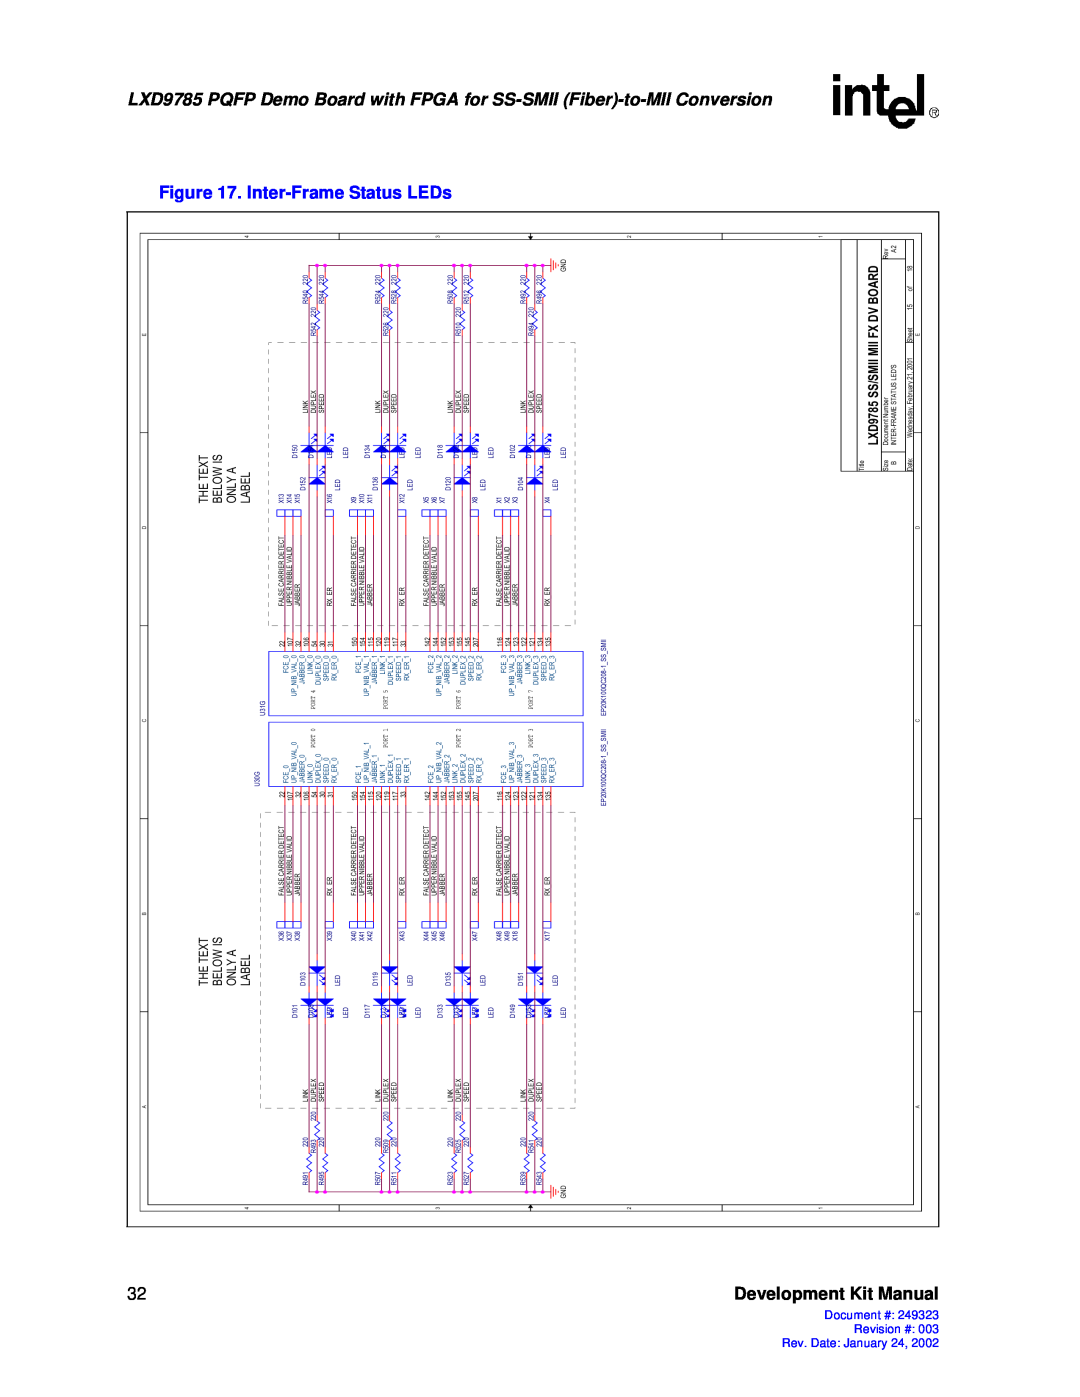 Intel 249323-003 manual Inter-Frame Status, LEDs, Fpga, for SS-SMII Fiber-to, Development Kit Manual, Conversion, Port 